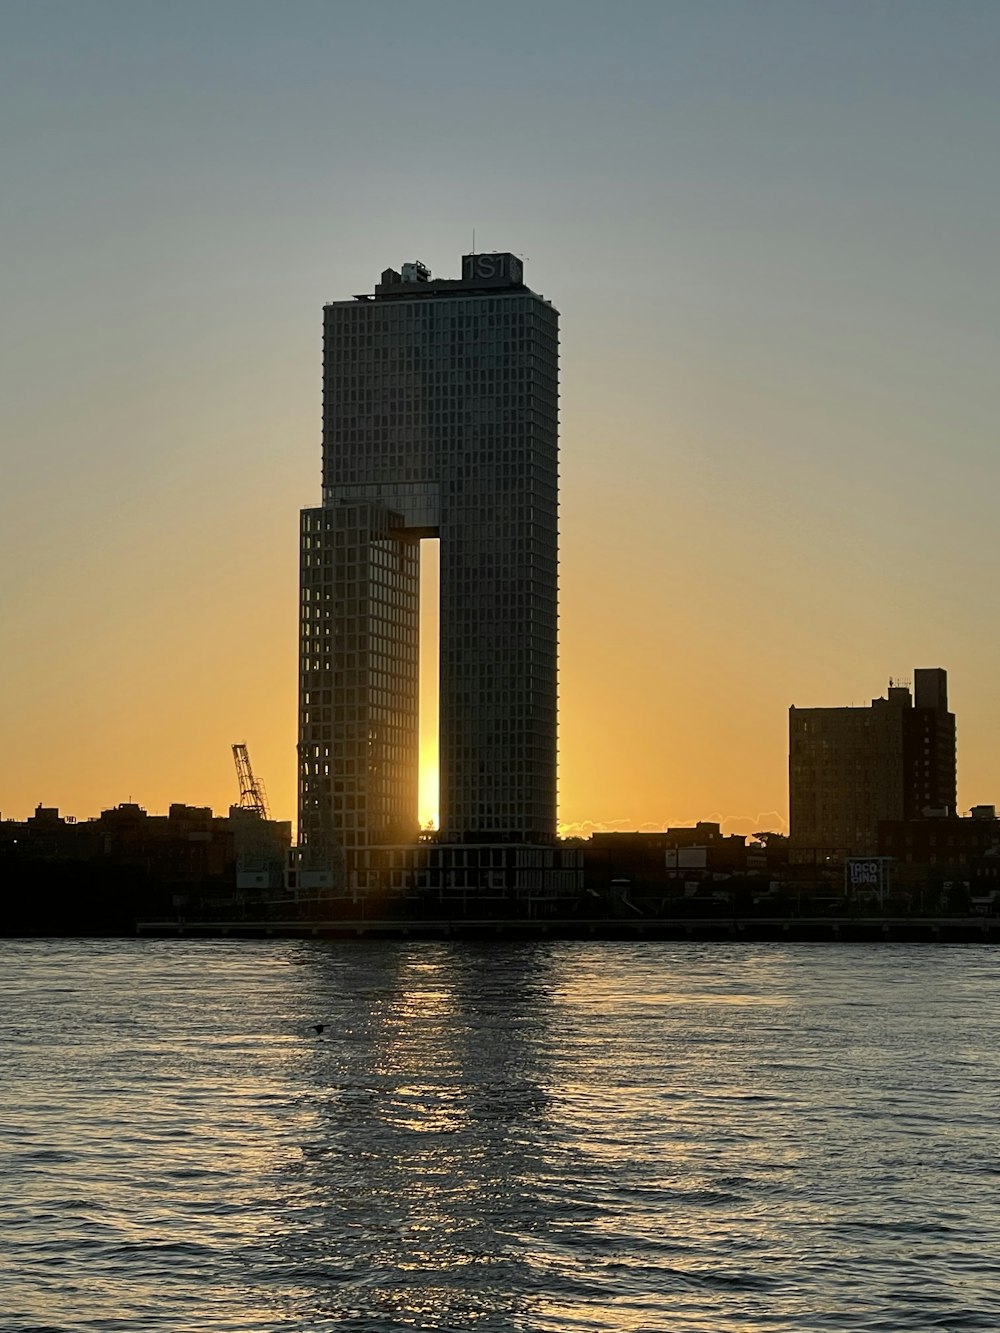 El sol se está poniendo detrás de un edificio alto